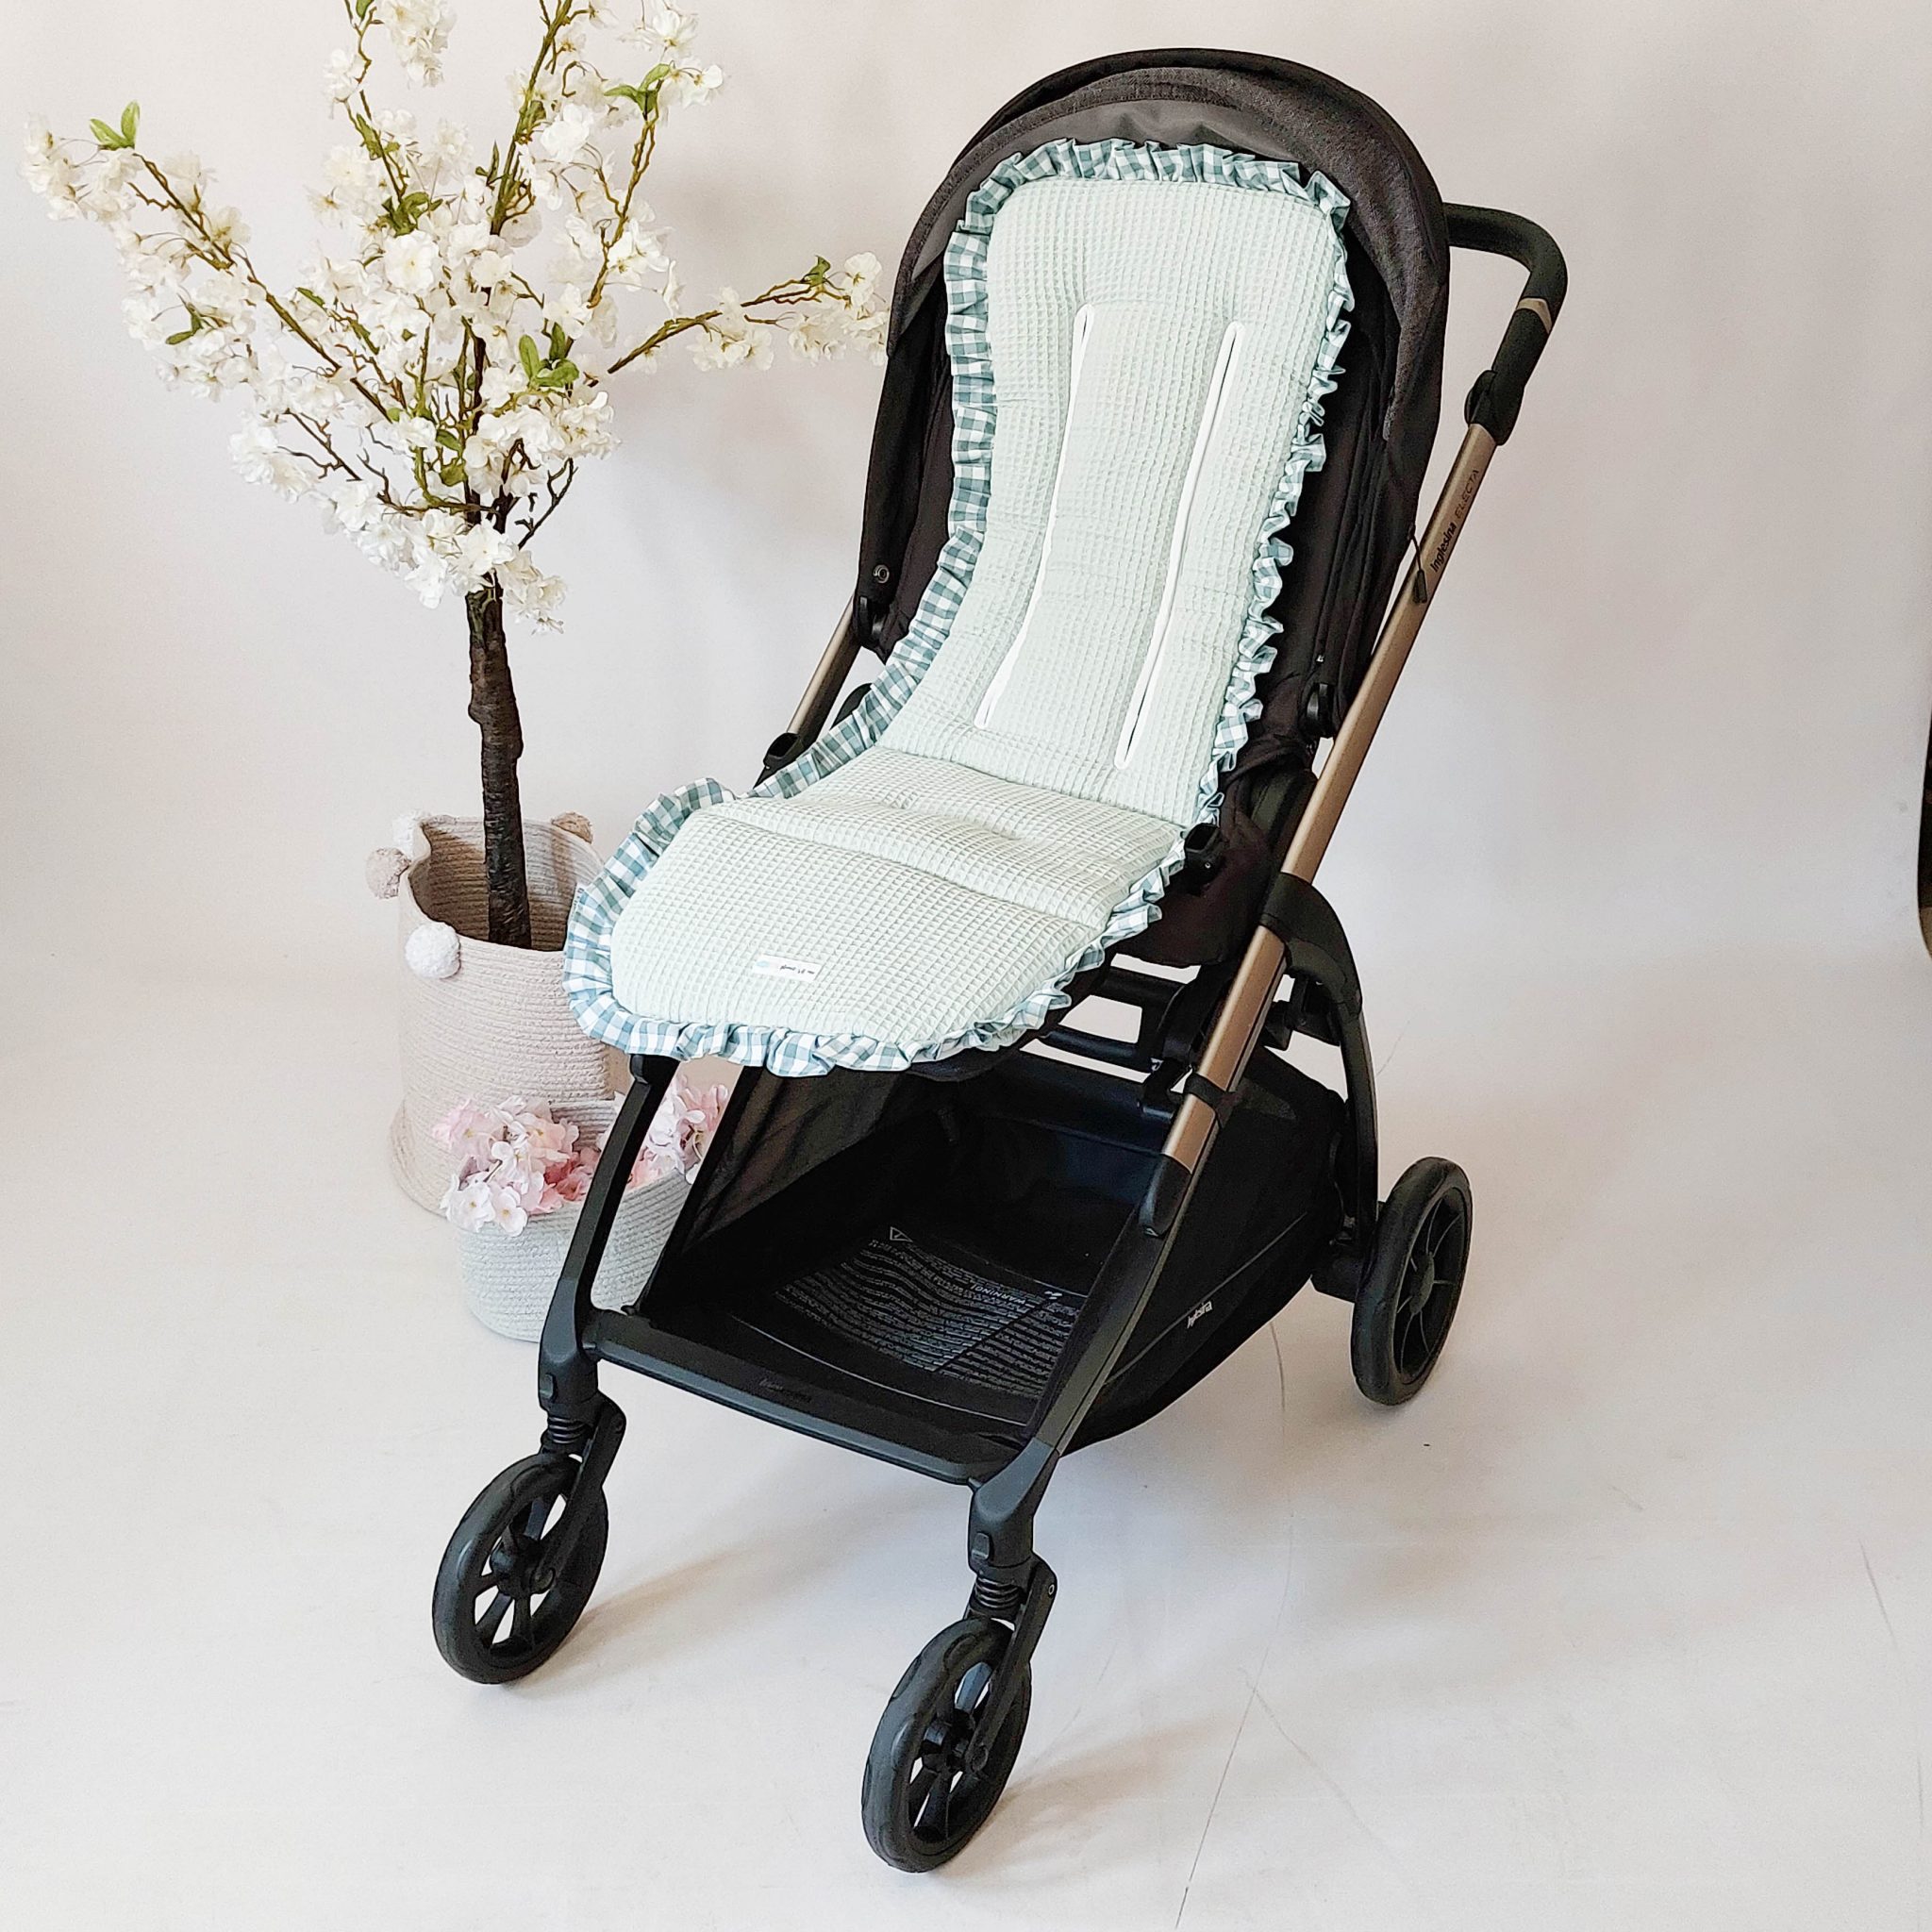 Colchoneta silla Cybex - personalizada con tu tela favorita